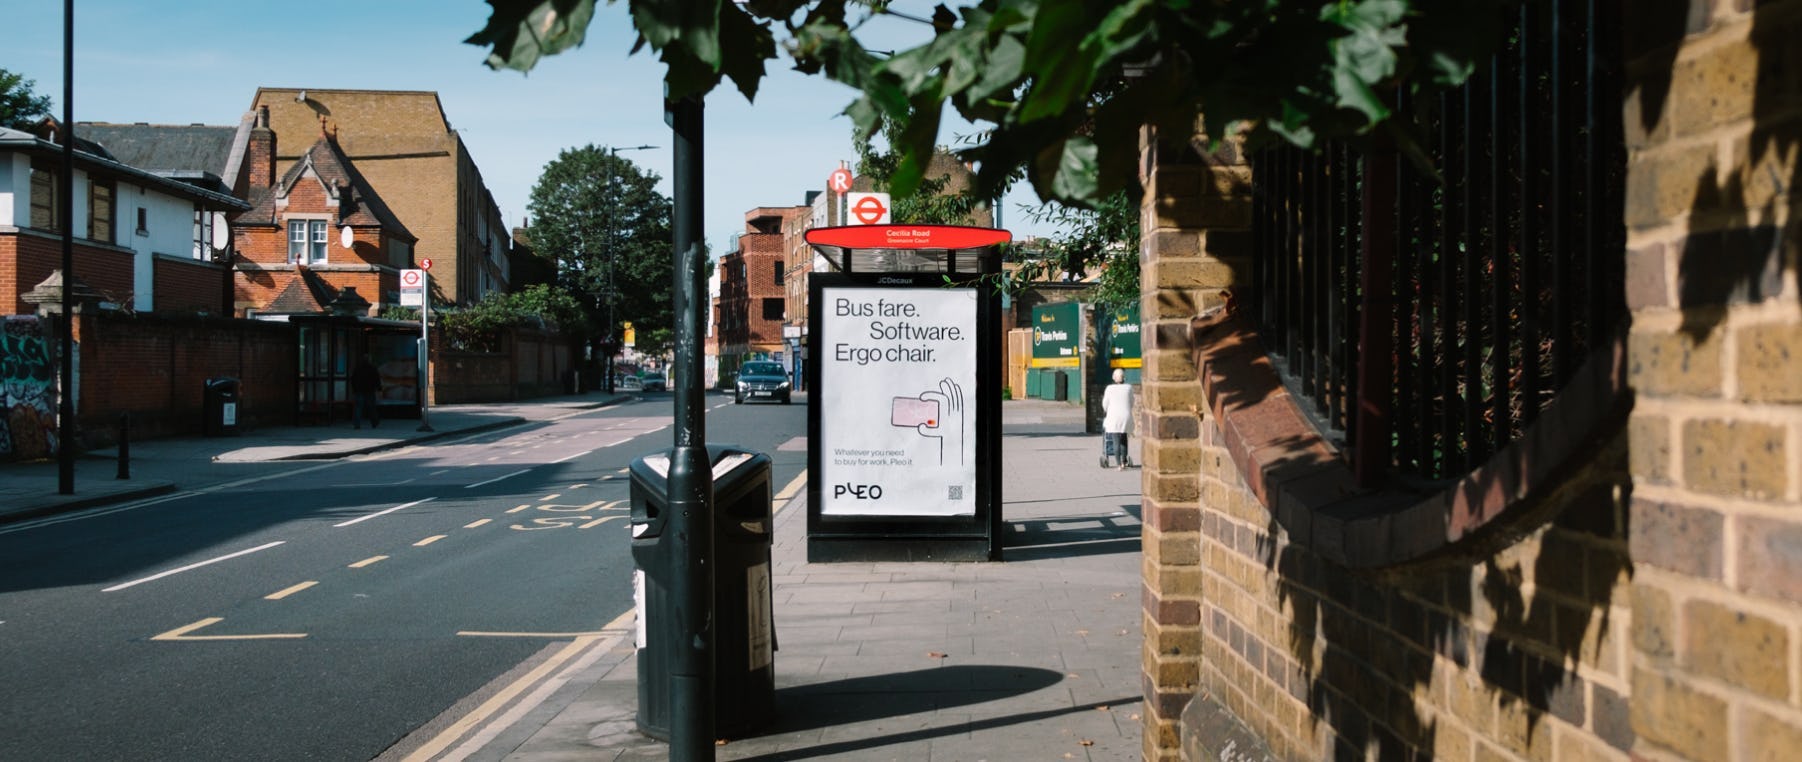 Kampanjbilder från Pleos reklam i London